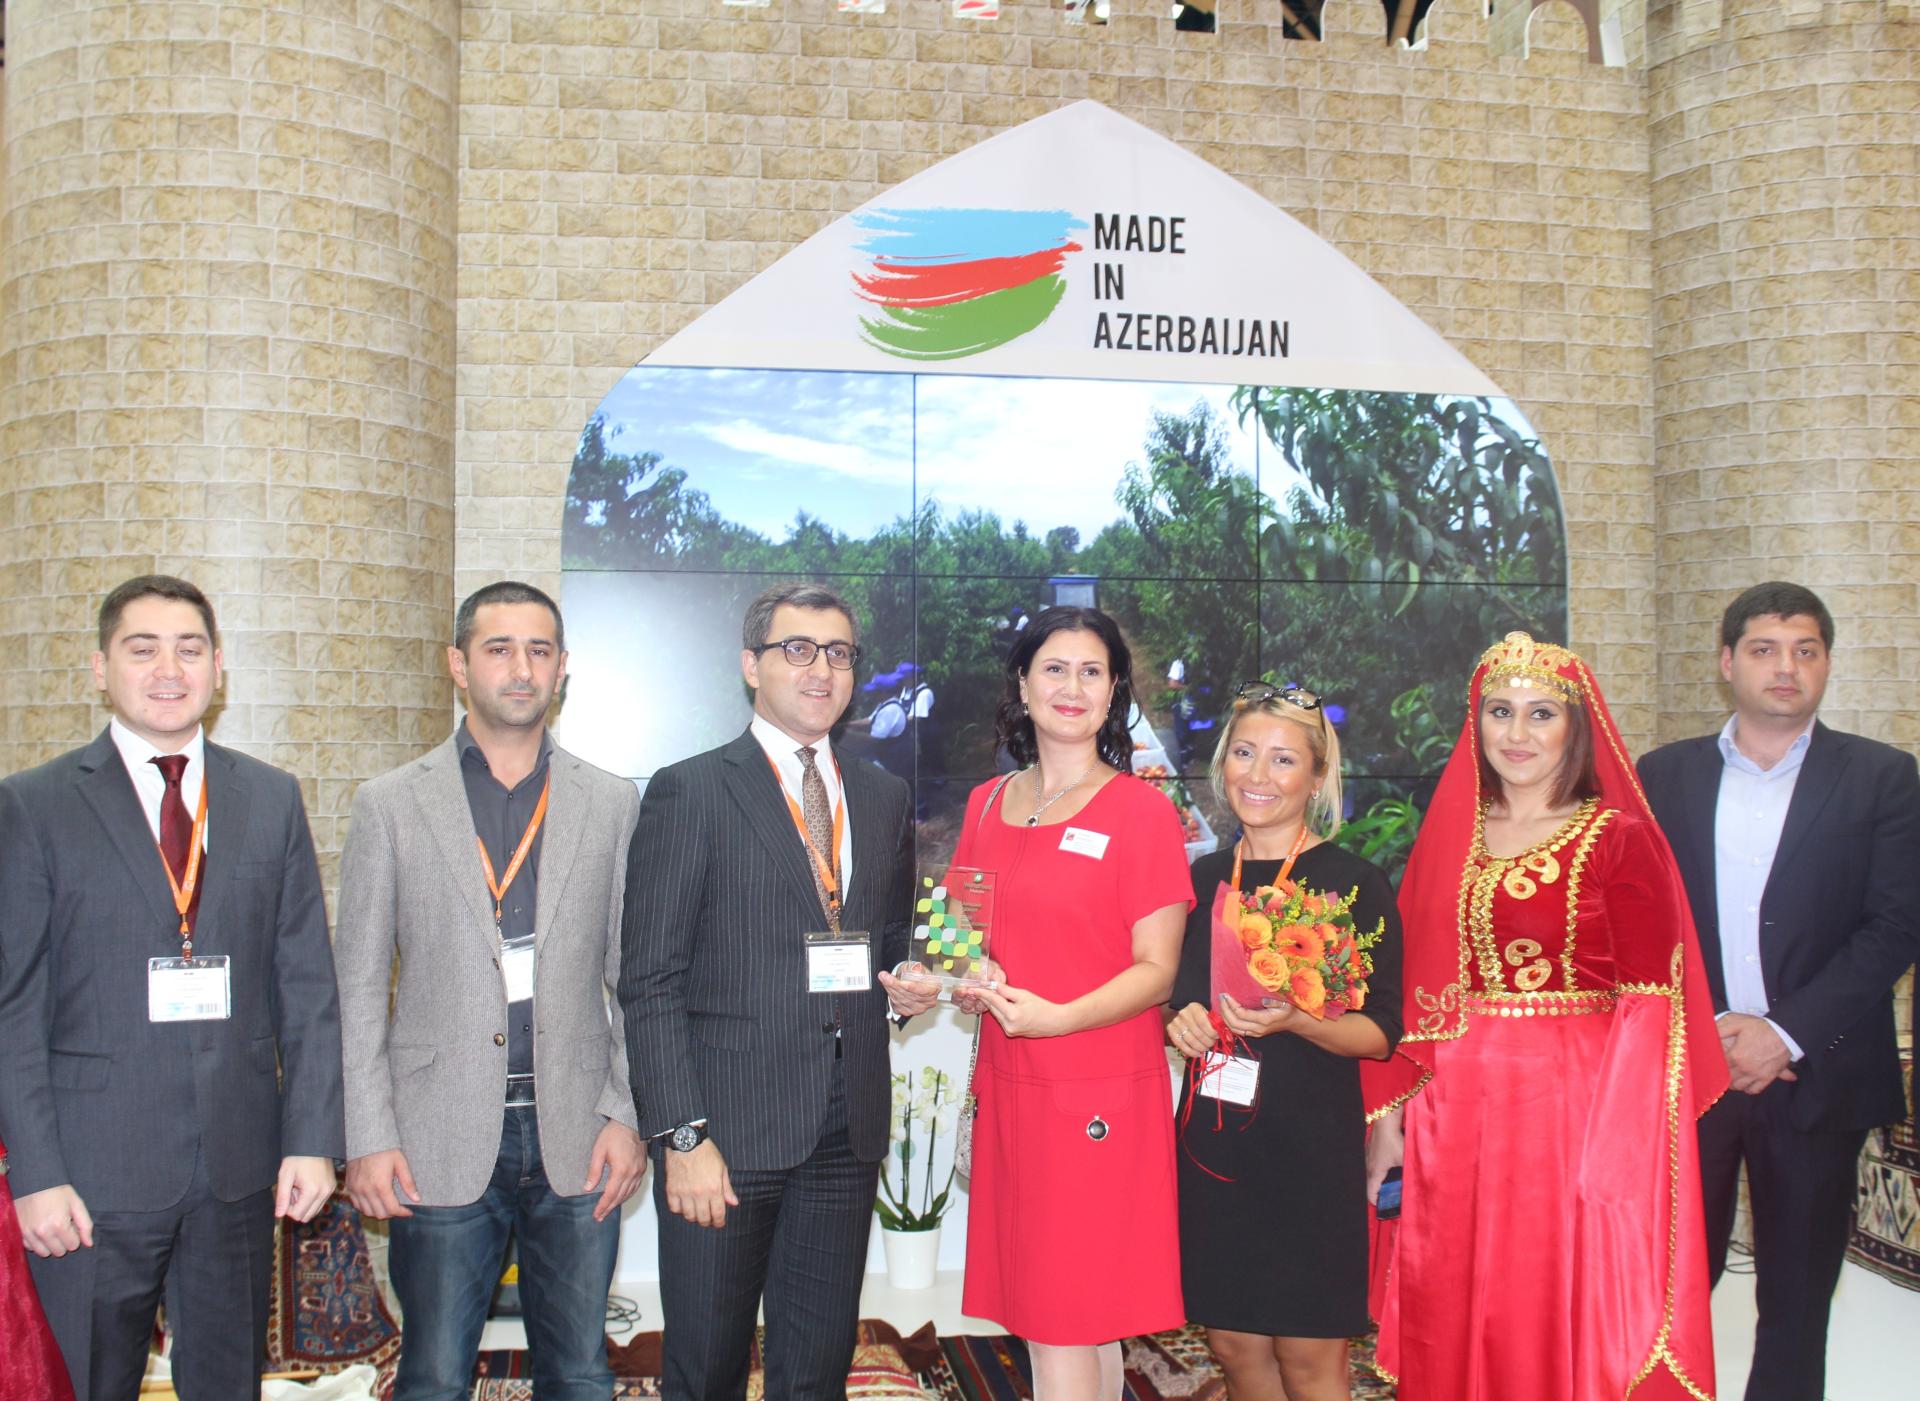 Azərbaycan “Worldfood Moscow” sərgisində mükafata layiq görülüb (FOTO)